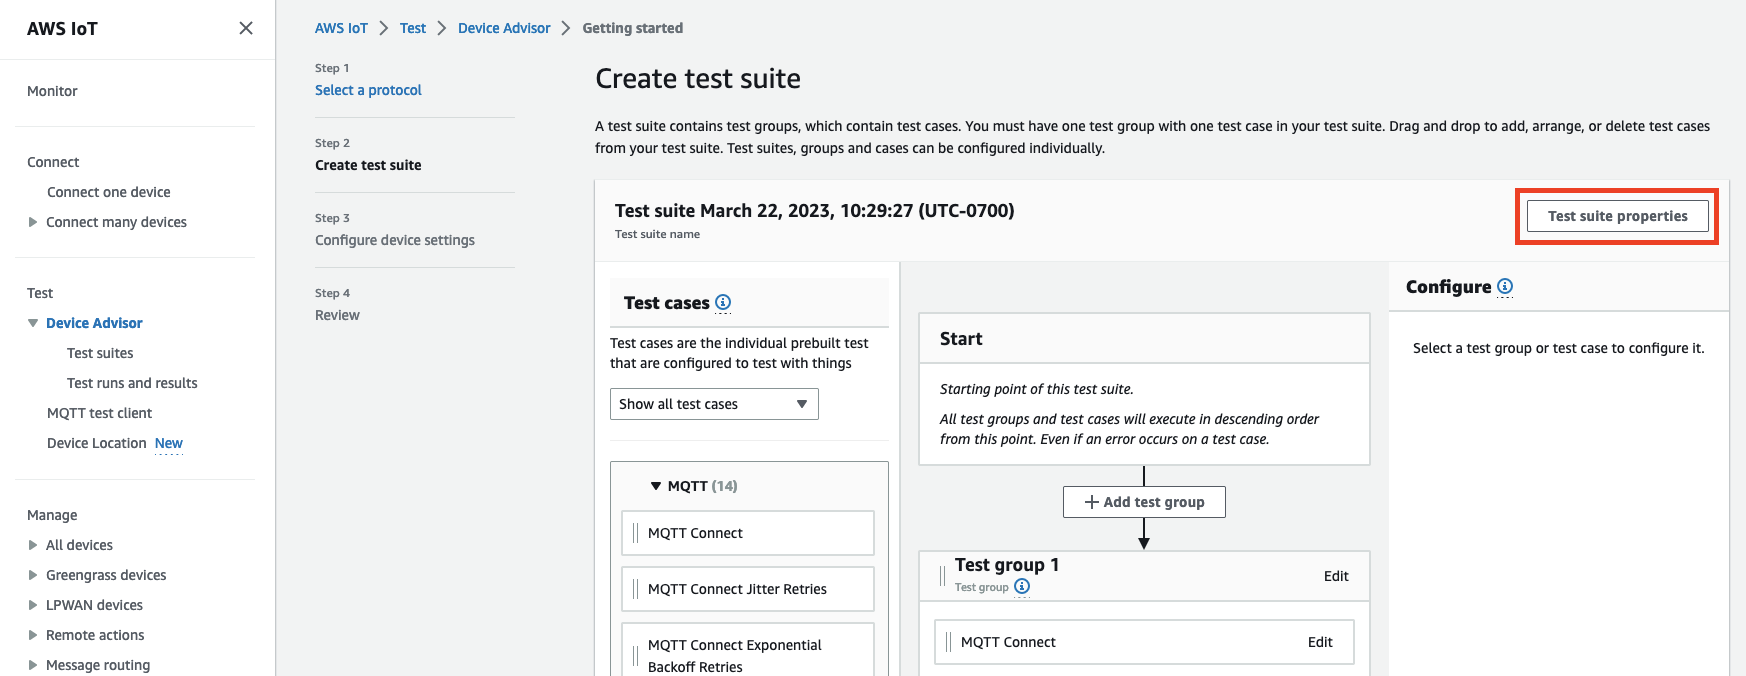 L'écran « Créer une suite de tests » dans Device Advisors, où les utilisateurs peuvent créer et configurer des groupes de test et des cas pour tester des appareils IoT avec le protocole MQTT.